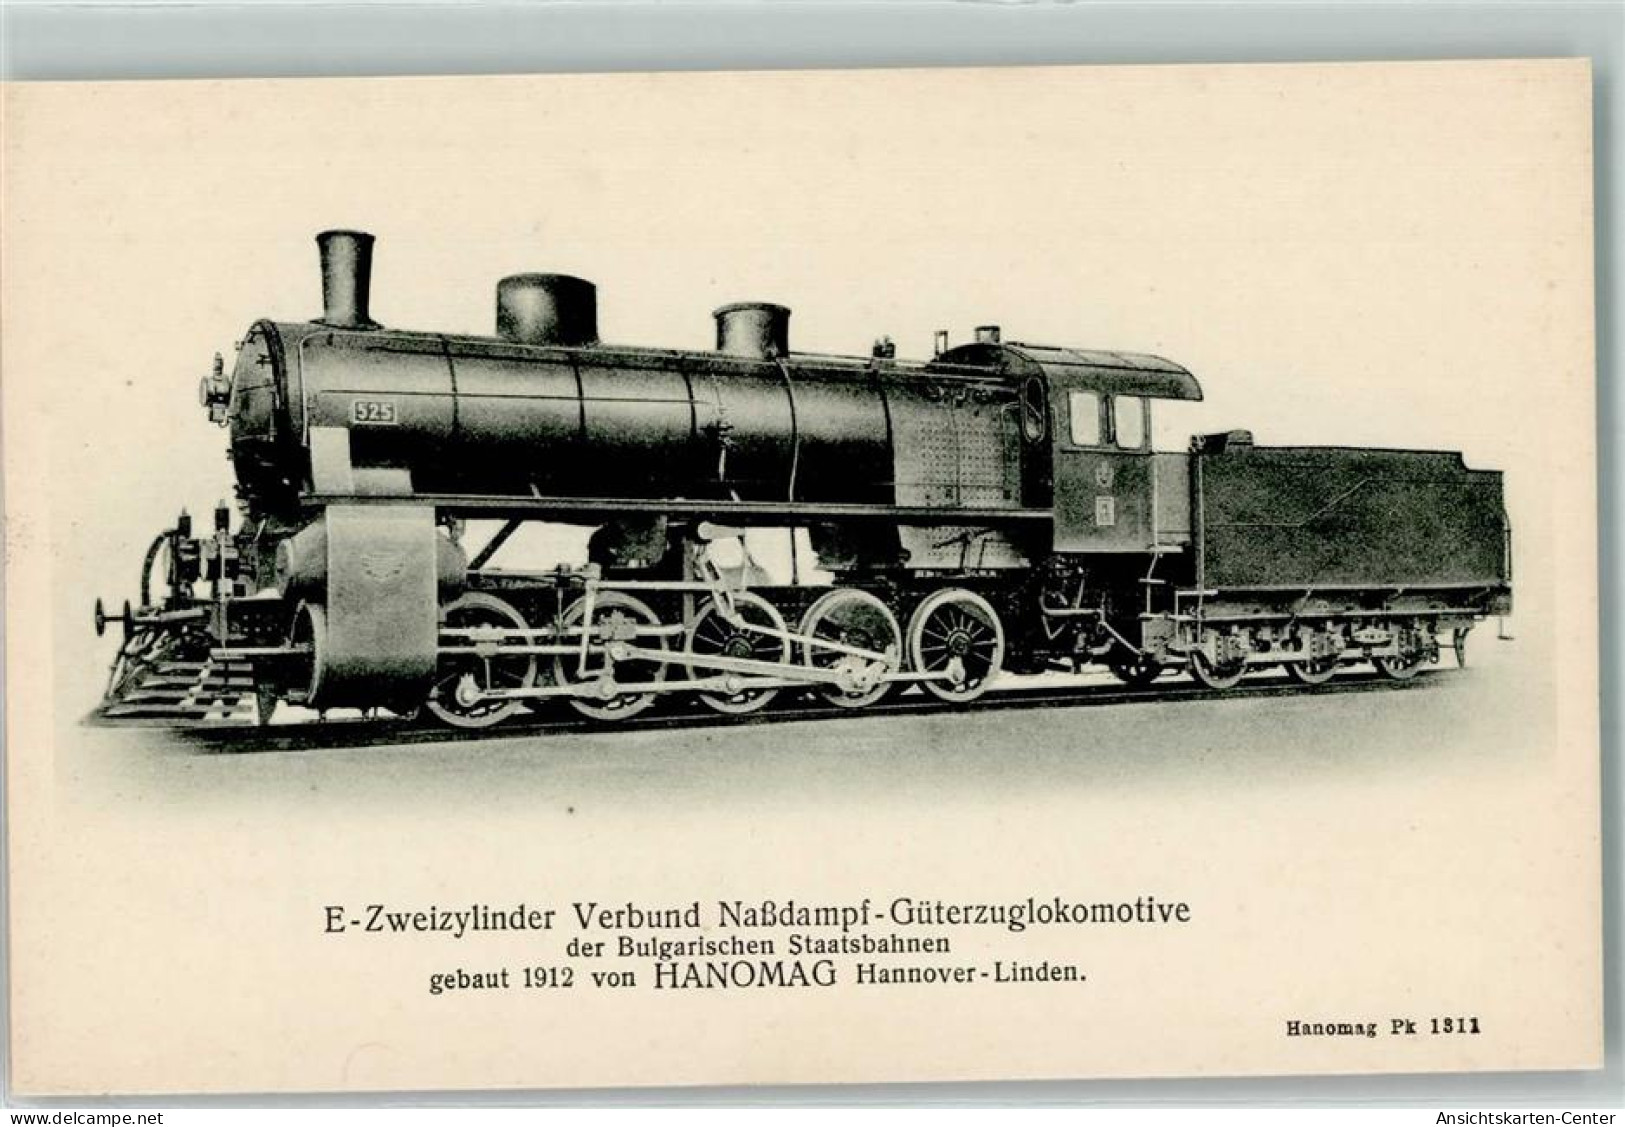 13181908 - E-Zweizylinder Verbund Nassdampf-Gueterzuglokomotive Der Bulgarischen Staatsbahnen 525 Gebaut 1912 Hanomag P - Eisenbahnen